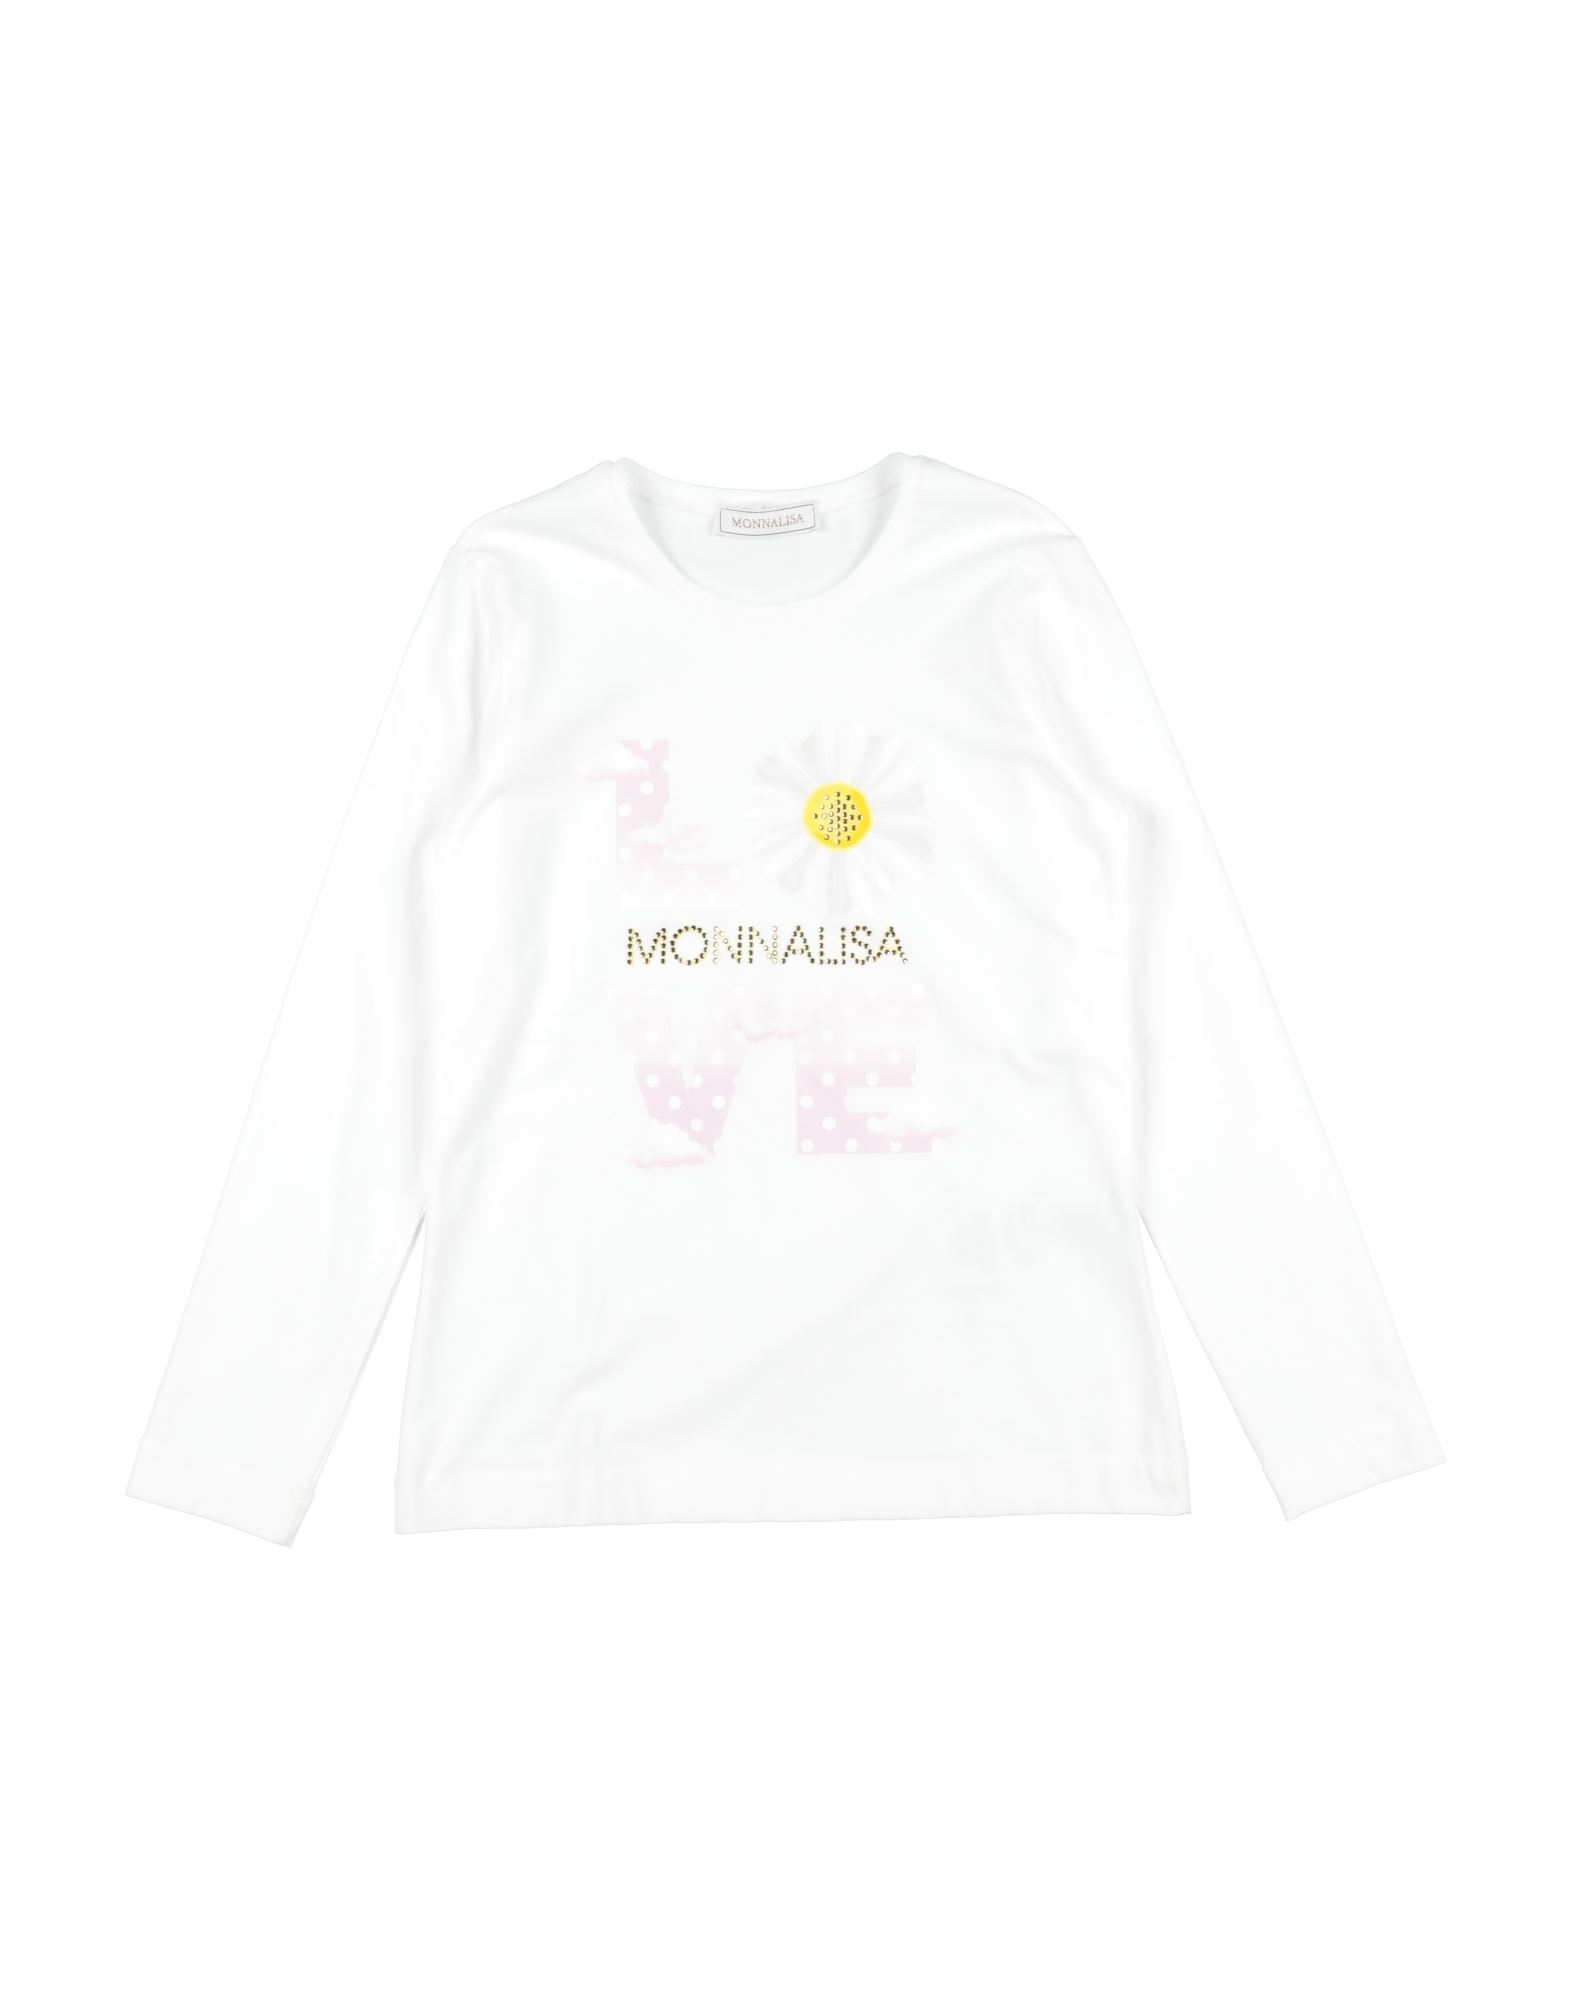 Monnalisa Kids'  T-shirts In White